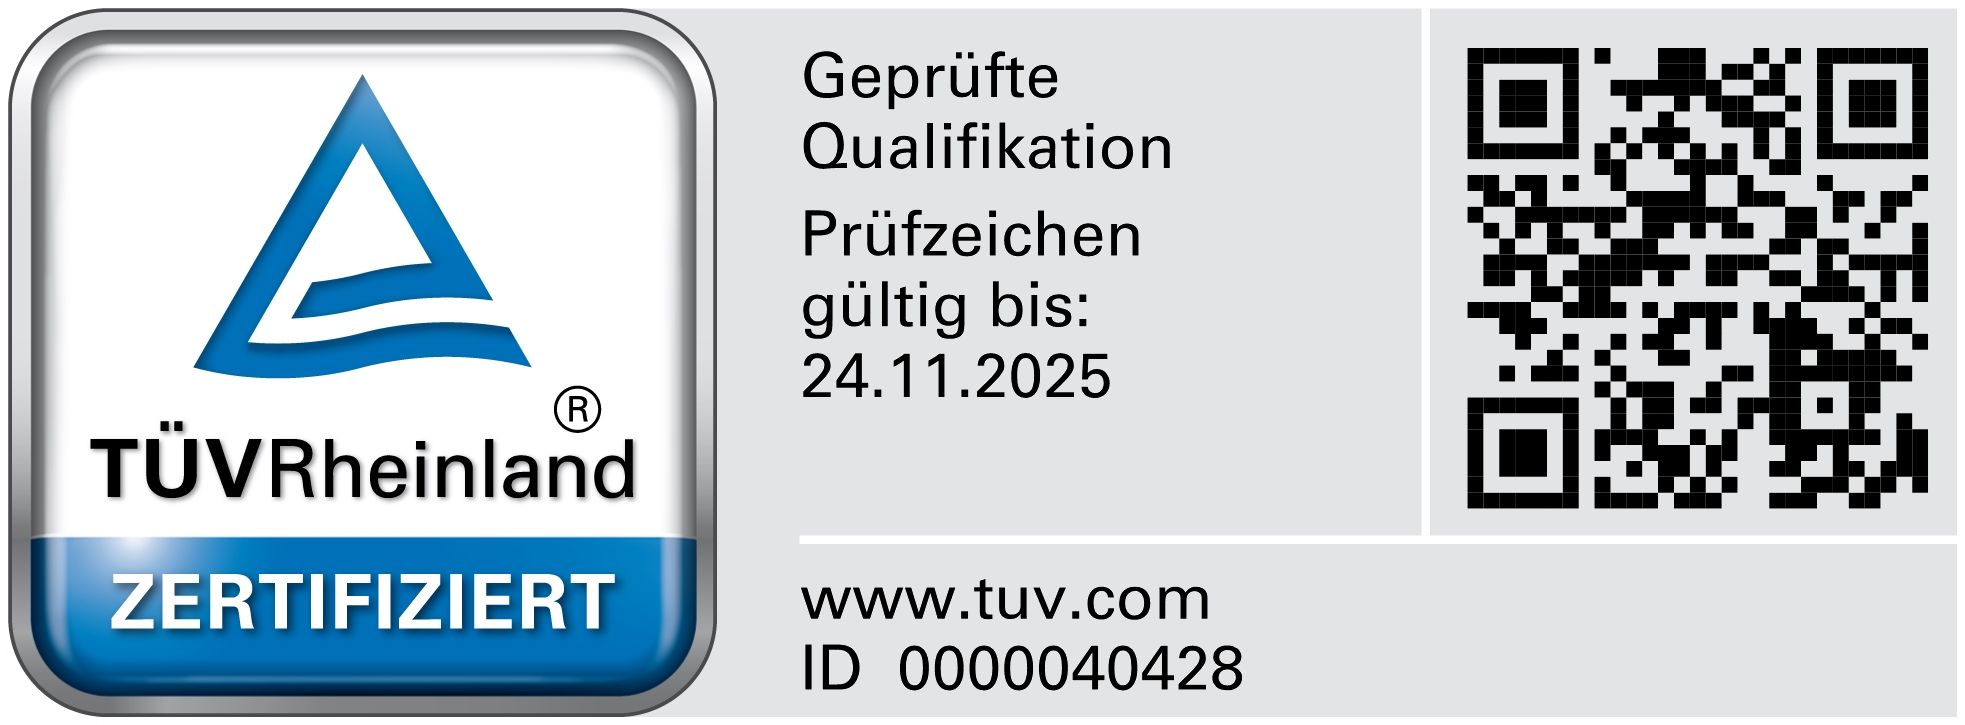 TÜV Prüfsignet Geldwäschebeauftragter & Compliance Auditor